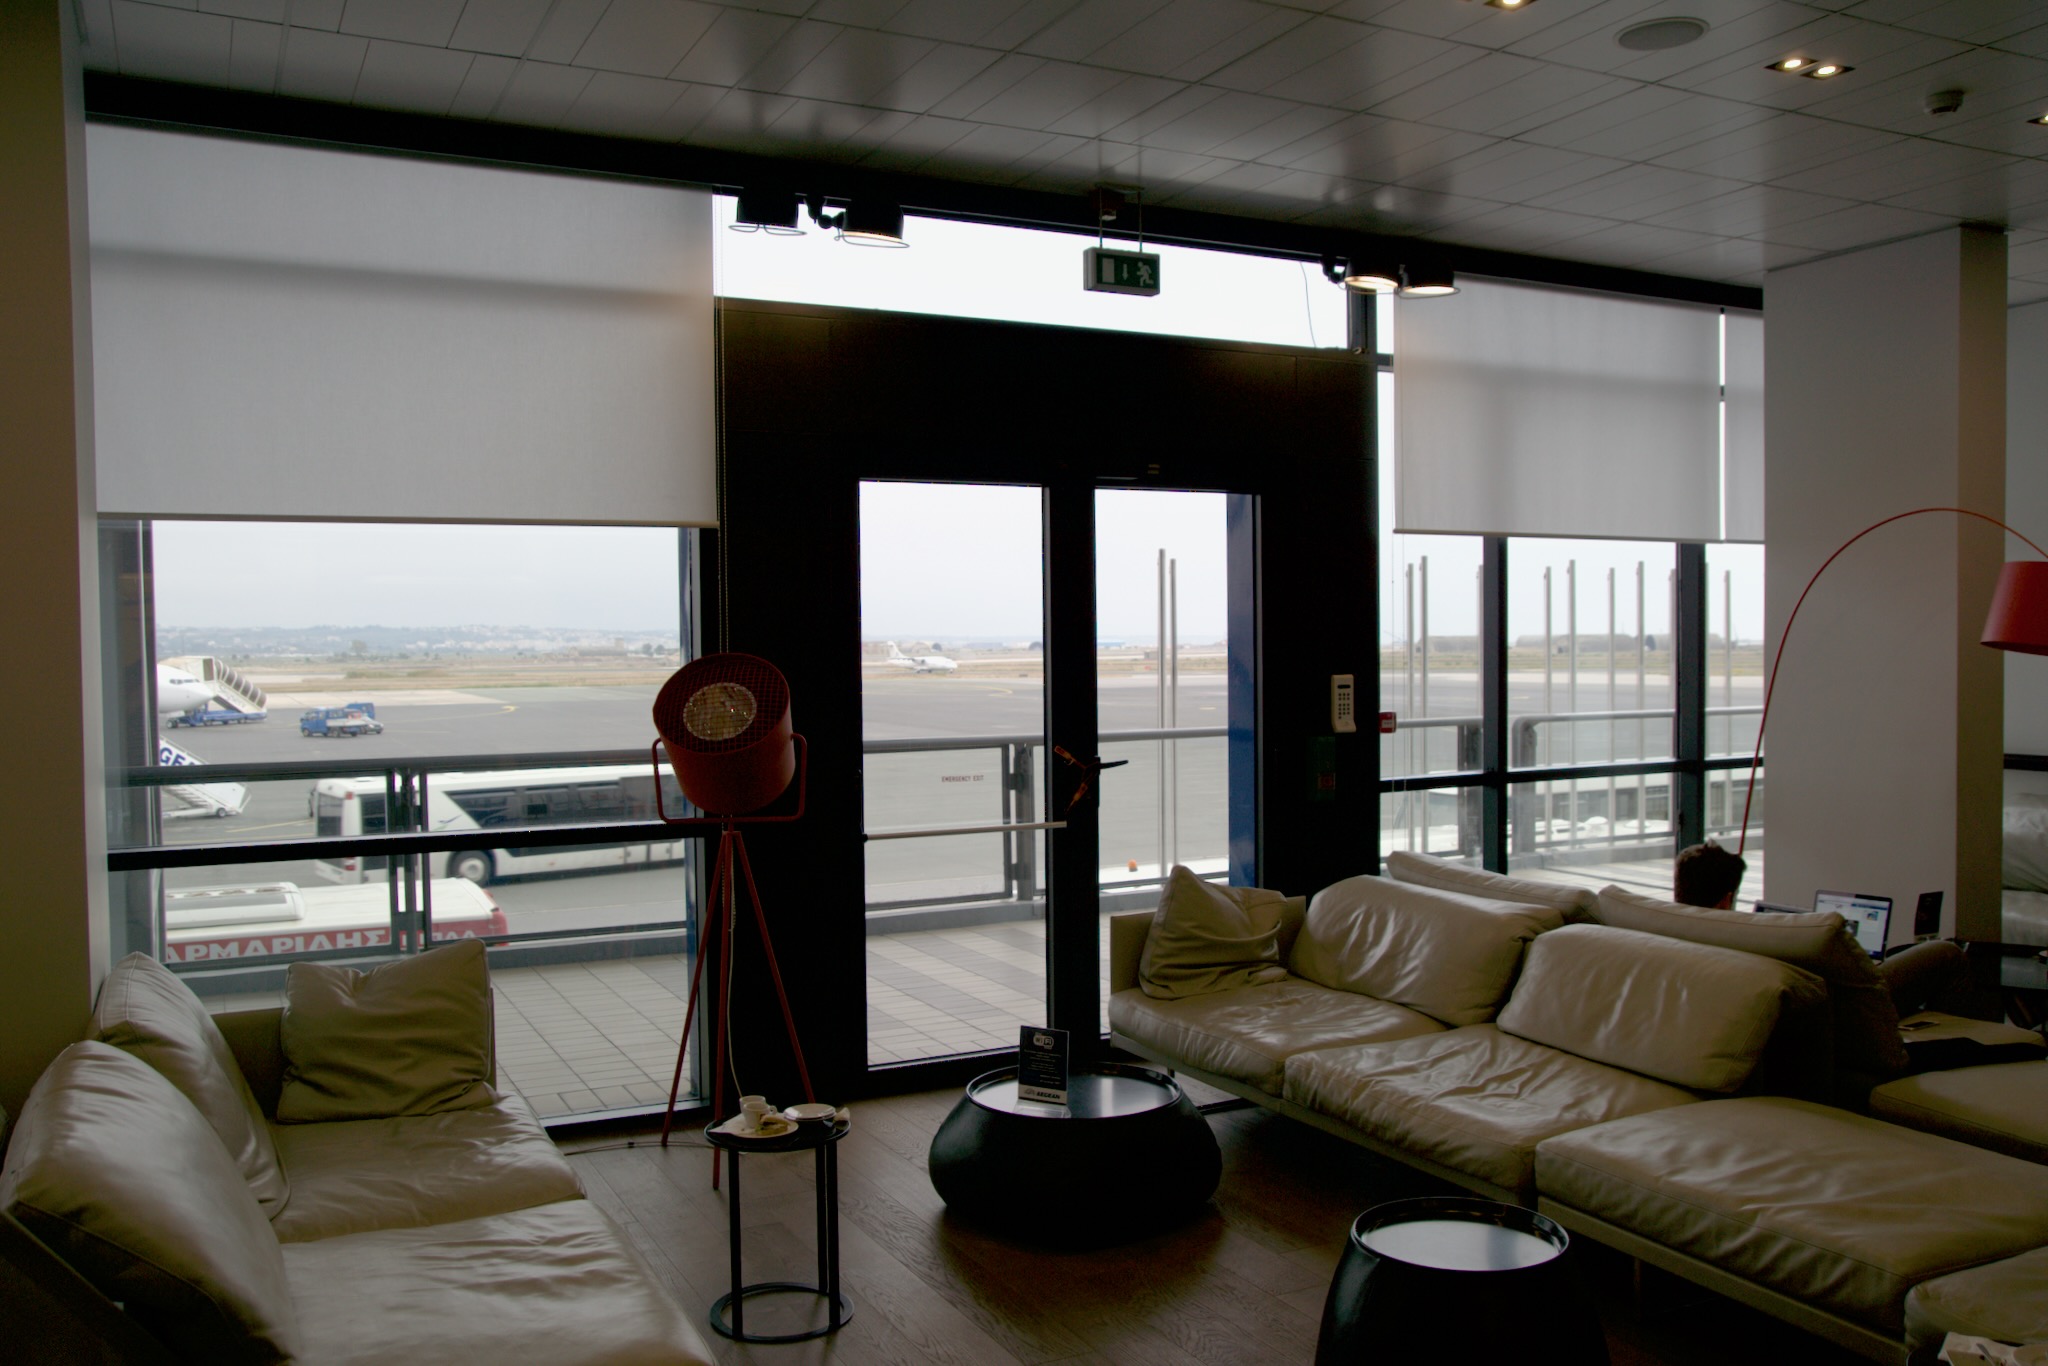 Sitzbereich an der großen Fensterfront der Aegean Business Lounge Thessaloniki